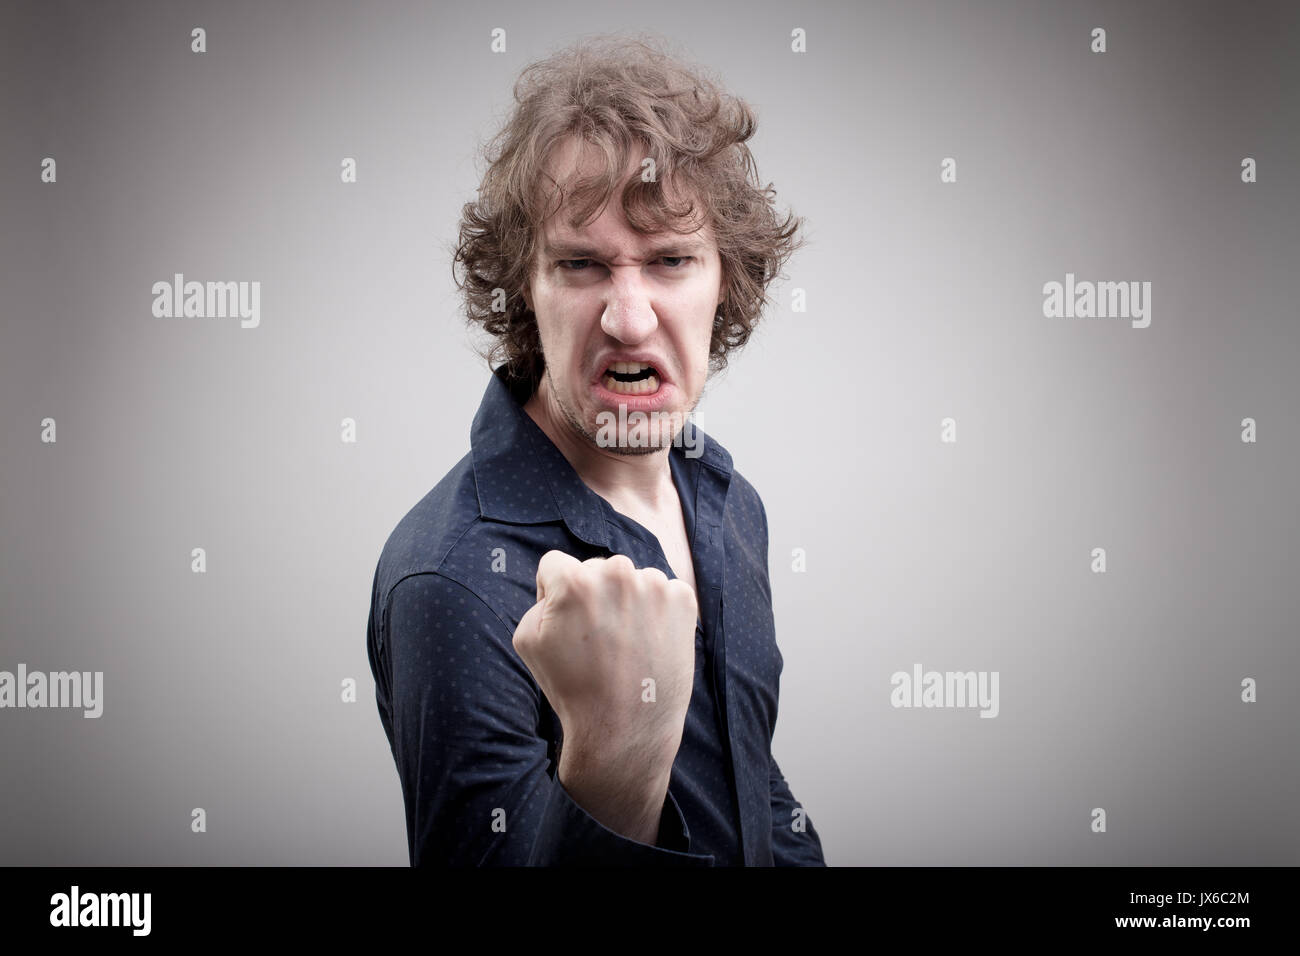 El hombre enojado tratando de intimidar a usted con una grave amenaza con su punzón Foto de stock